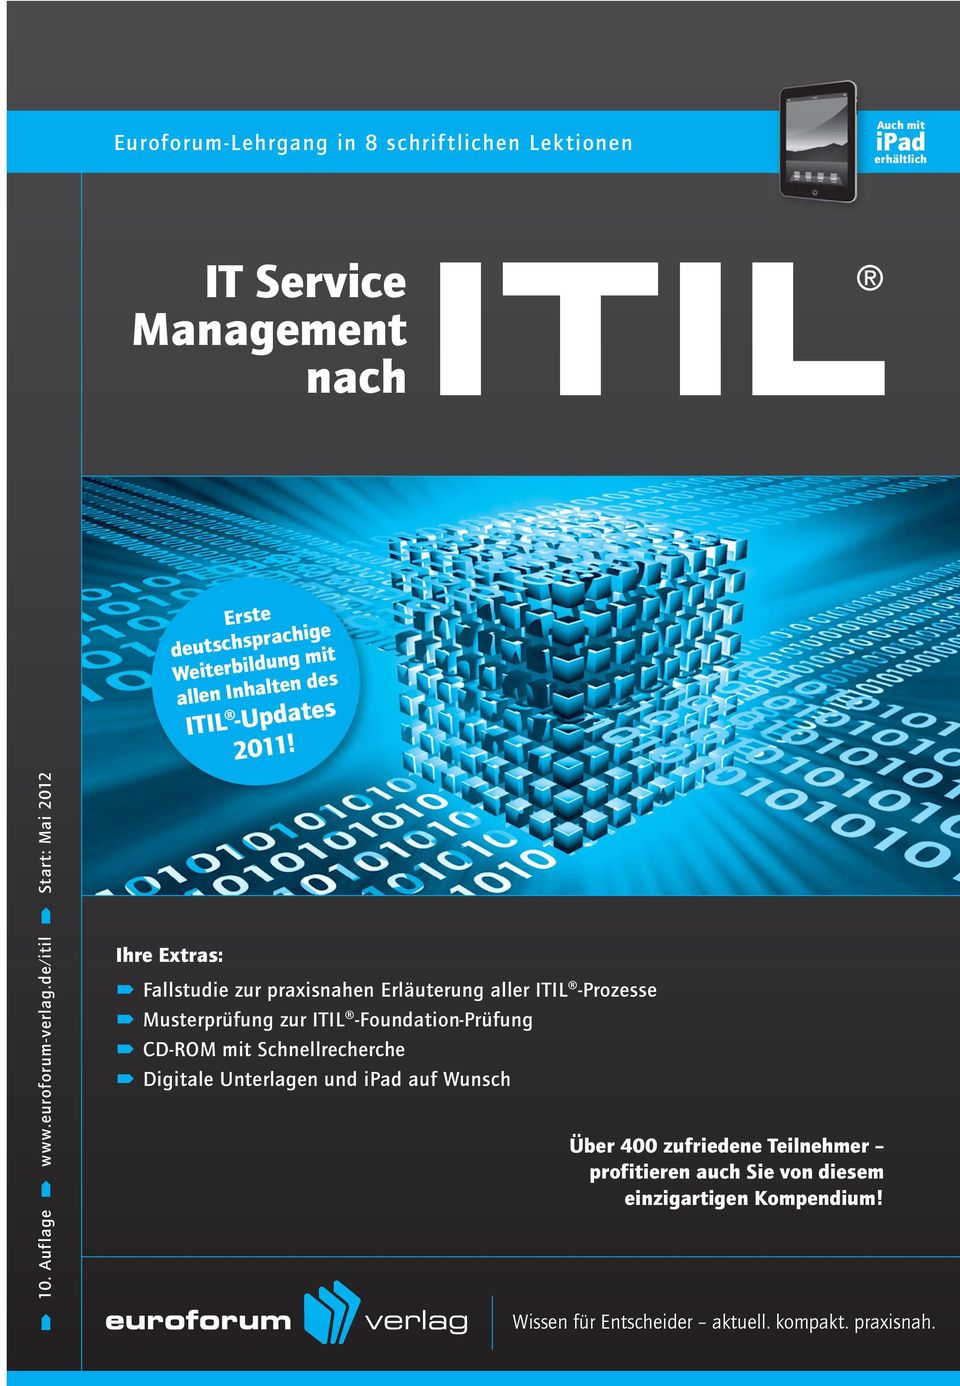 Ihre Extras: Fallstudie zur praxisnahen Erläuterung aller ITIL -Prozesse Musterprüfung zur ITIL -Foundation-Prüfung CD-ROM mit